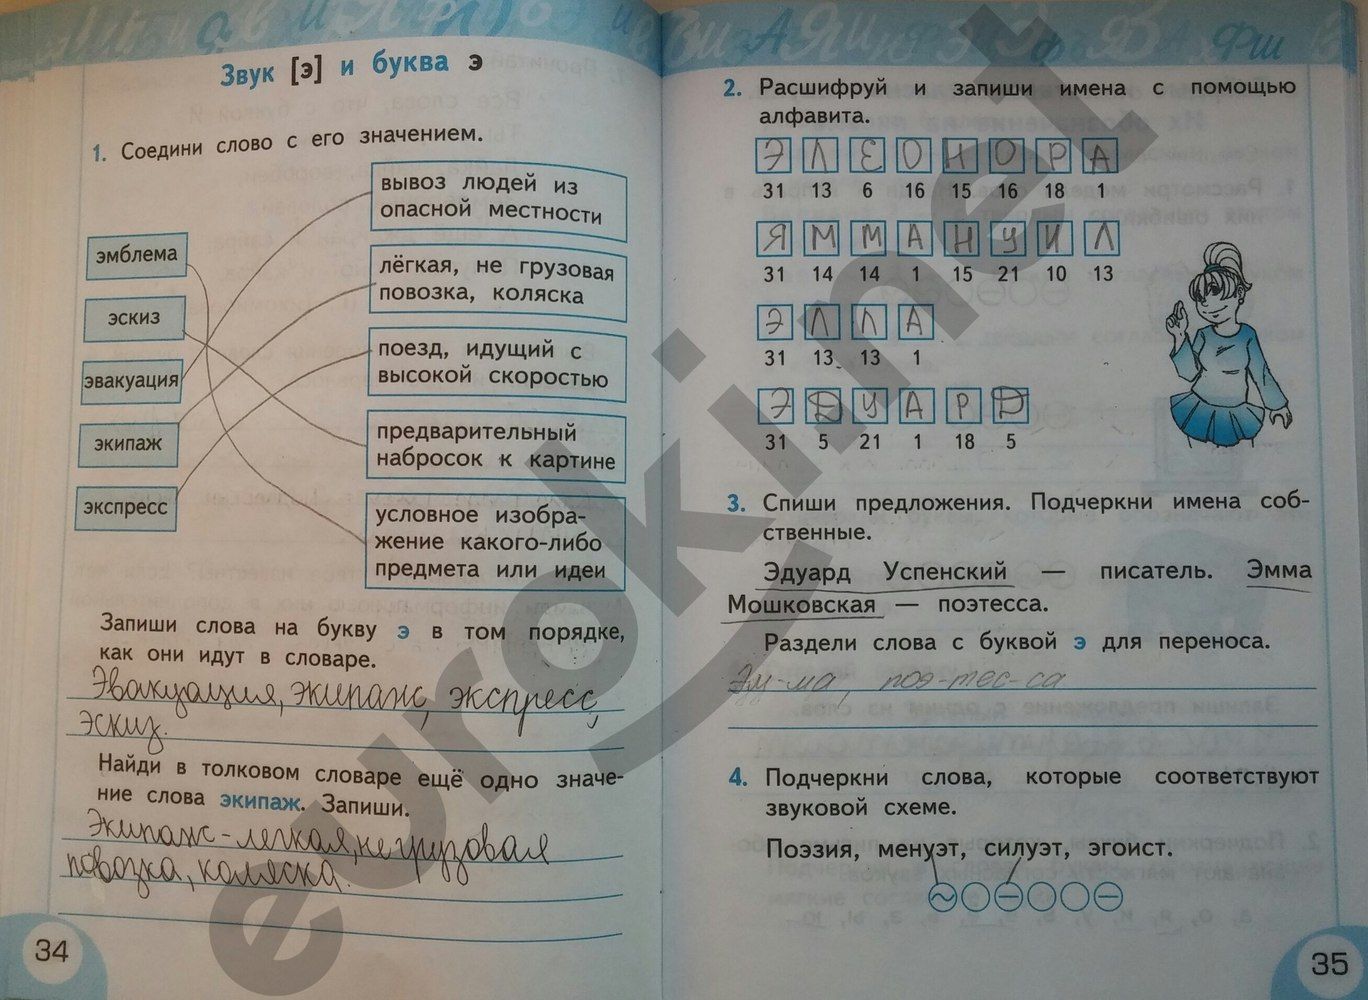 ГДЗ Русский язык 2 класс - стр. 34-35